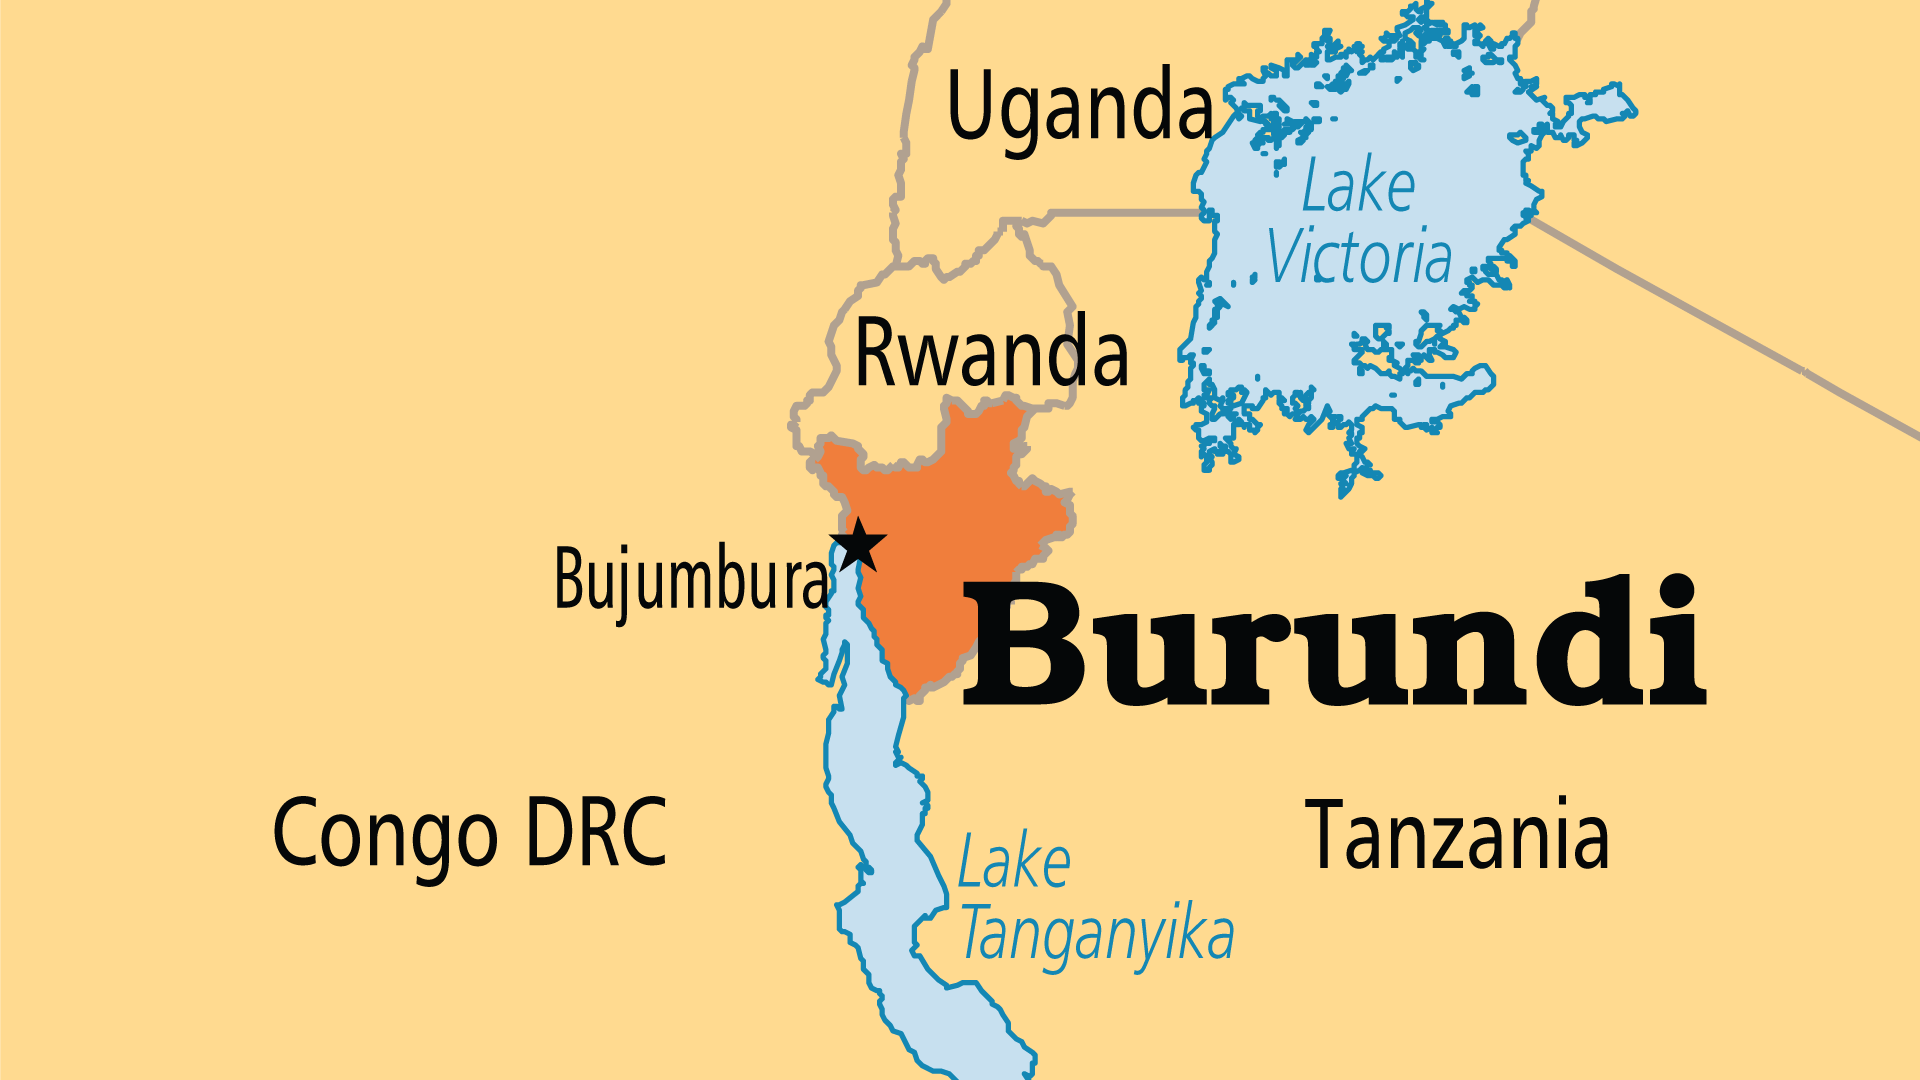 Burundi (Operation World)